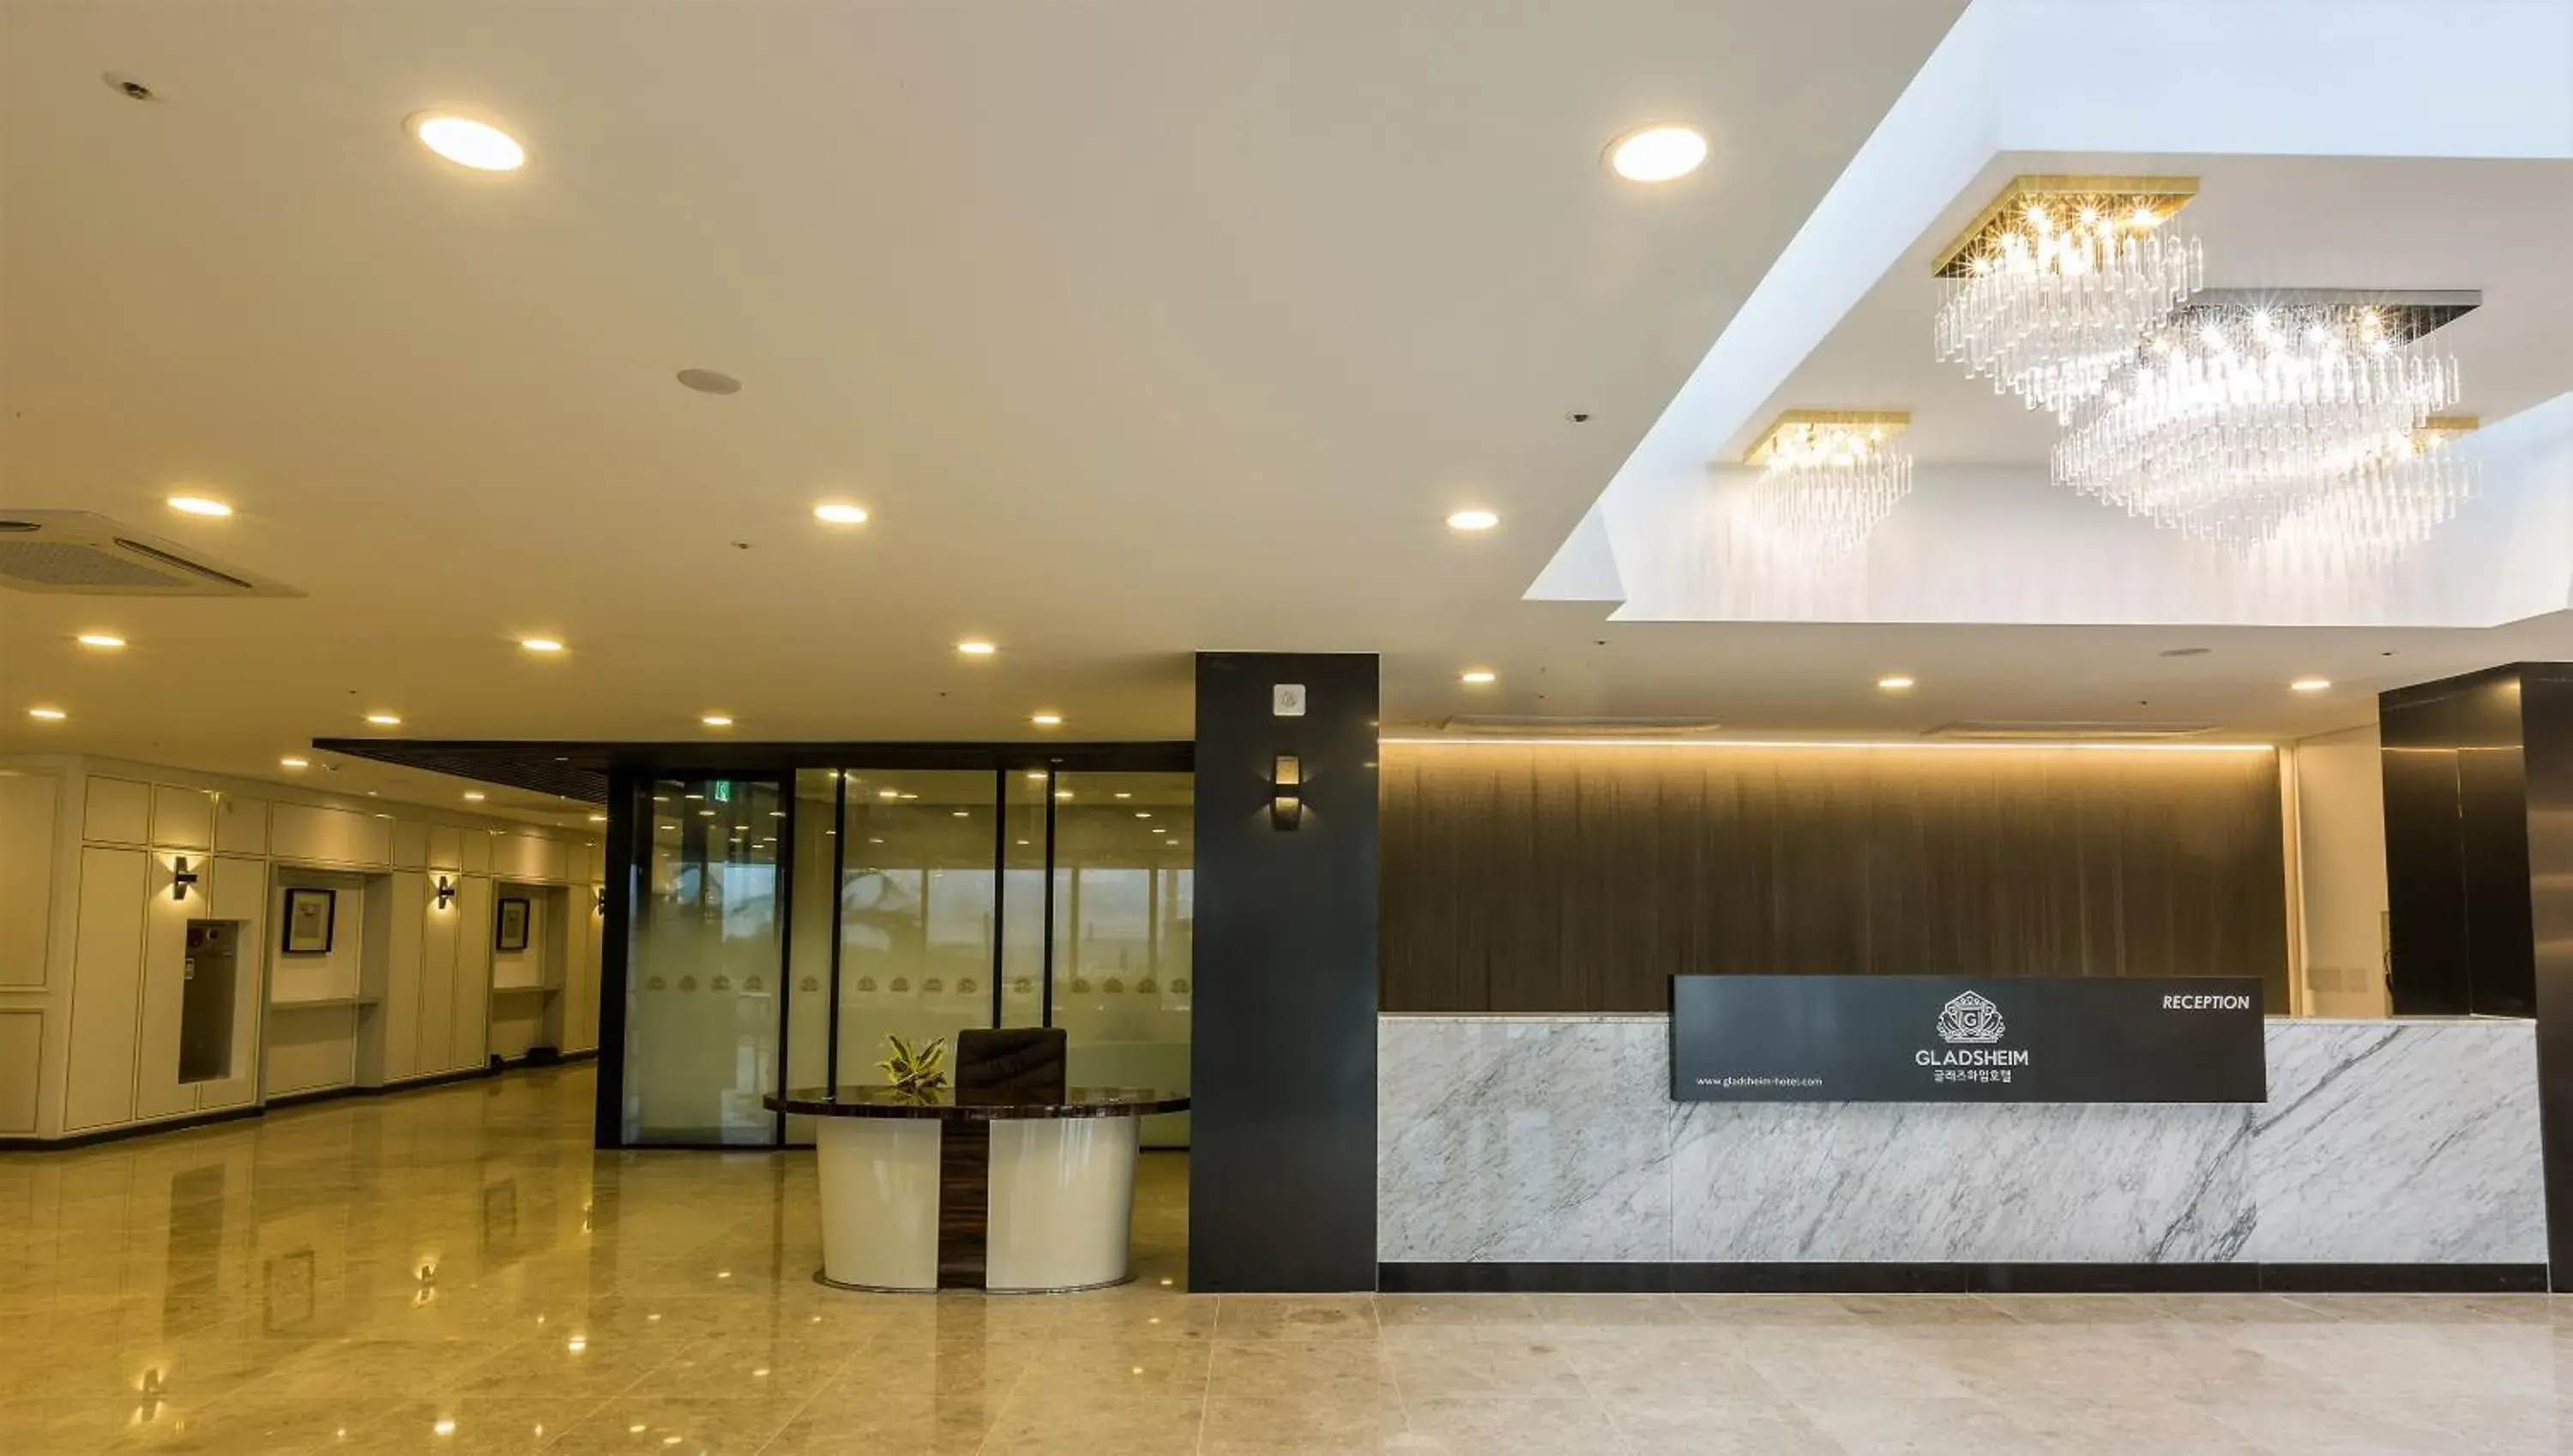 Lobby or reception, Lobby/Reception in GLADSHEIM HOTEL